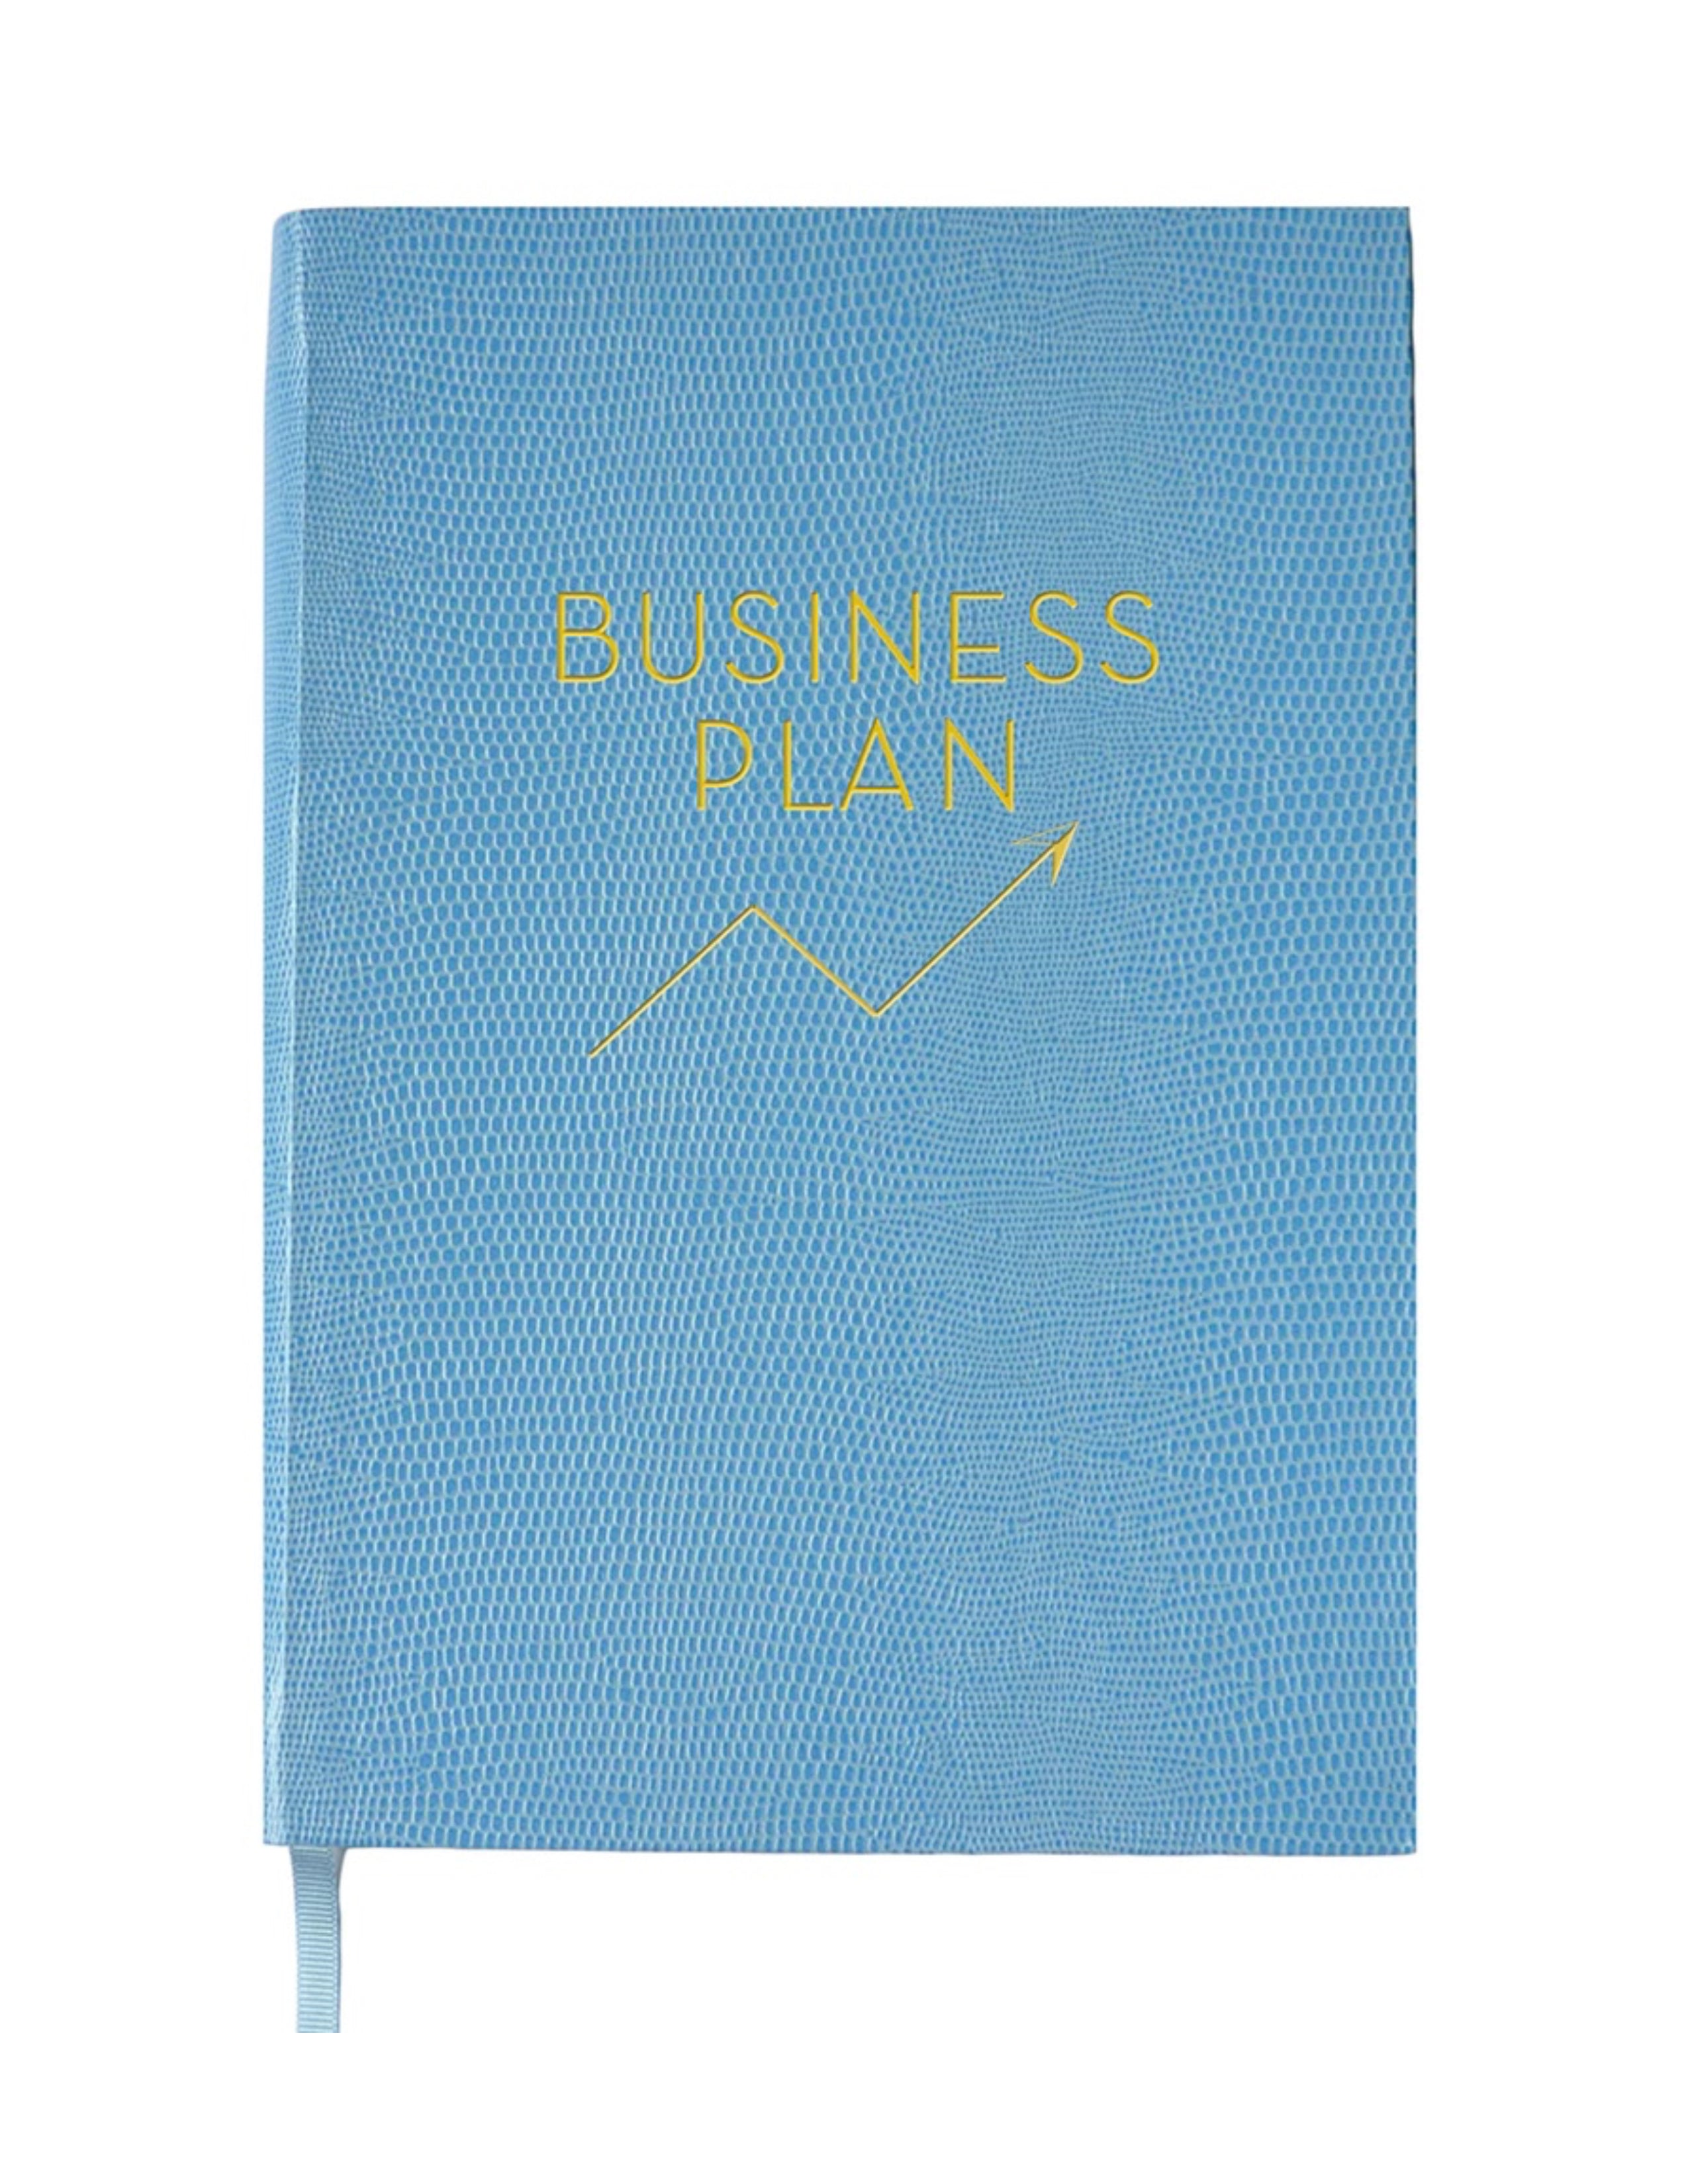 Business Plan Notebook